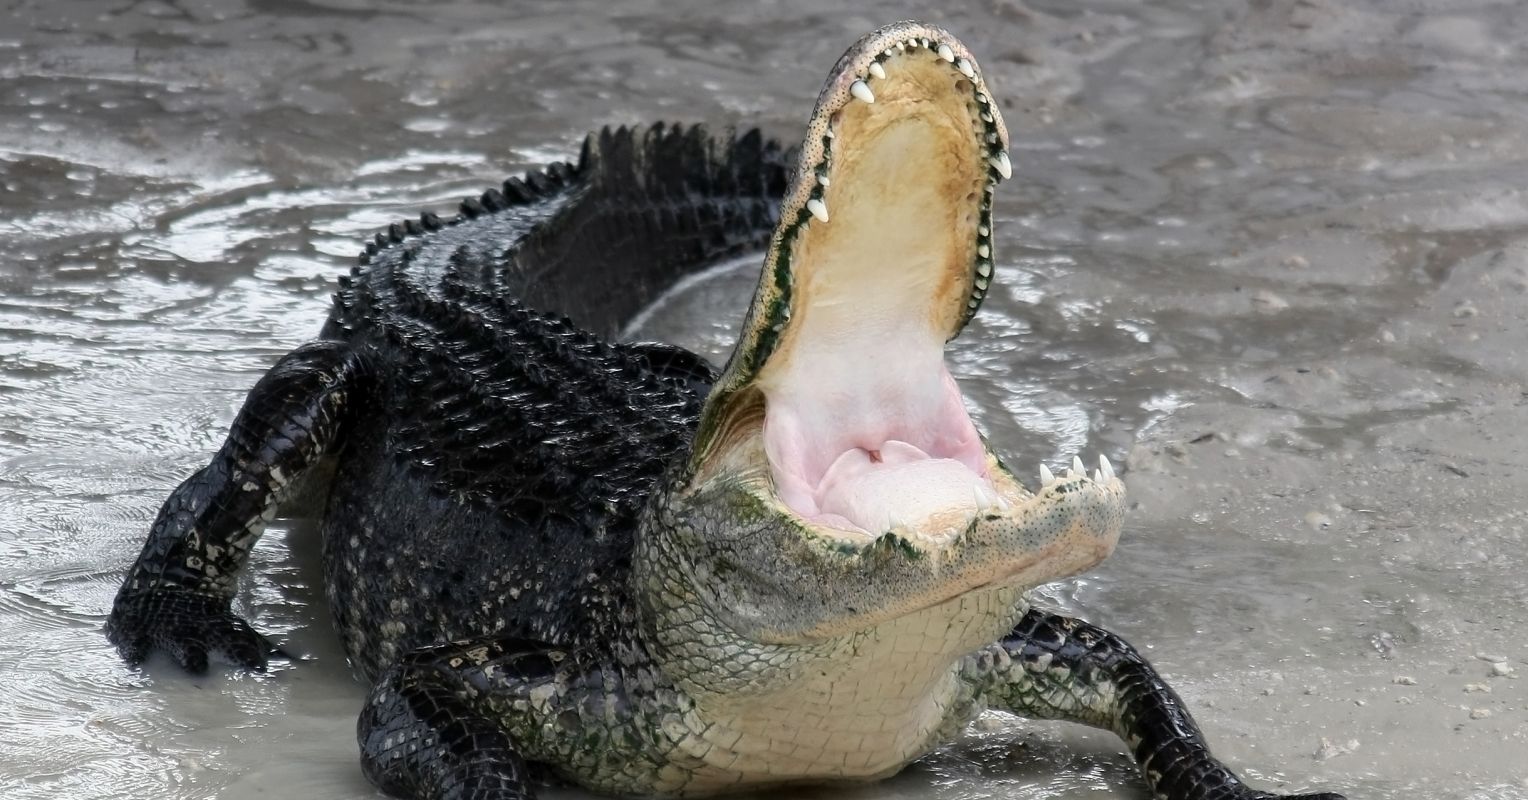 Do Alligators Get Paralyzed After Eating?